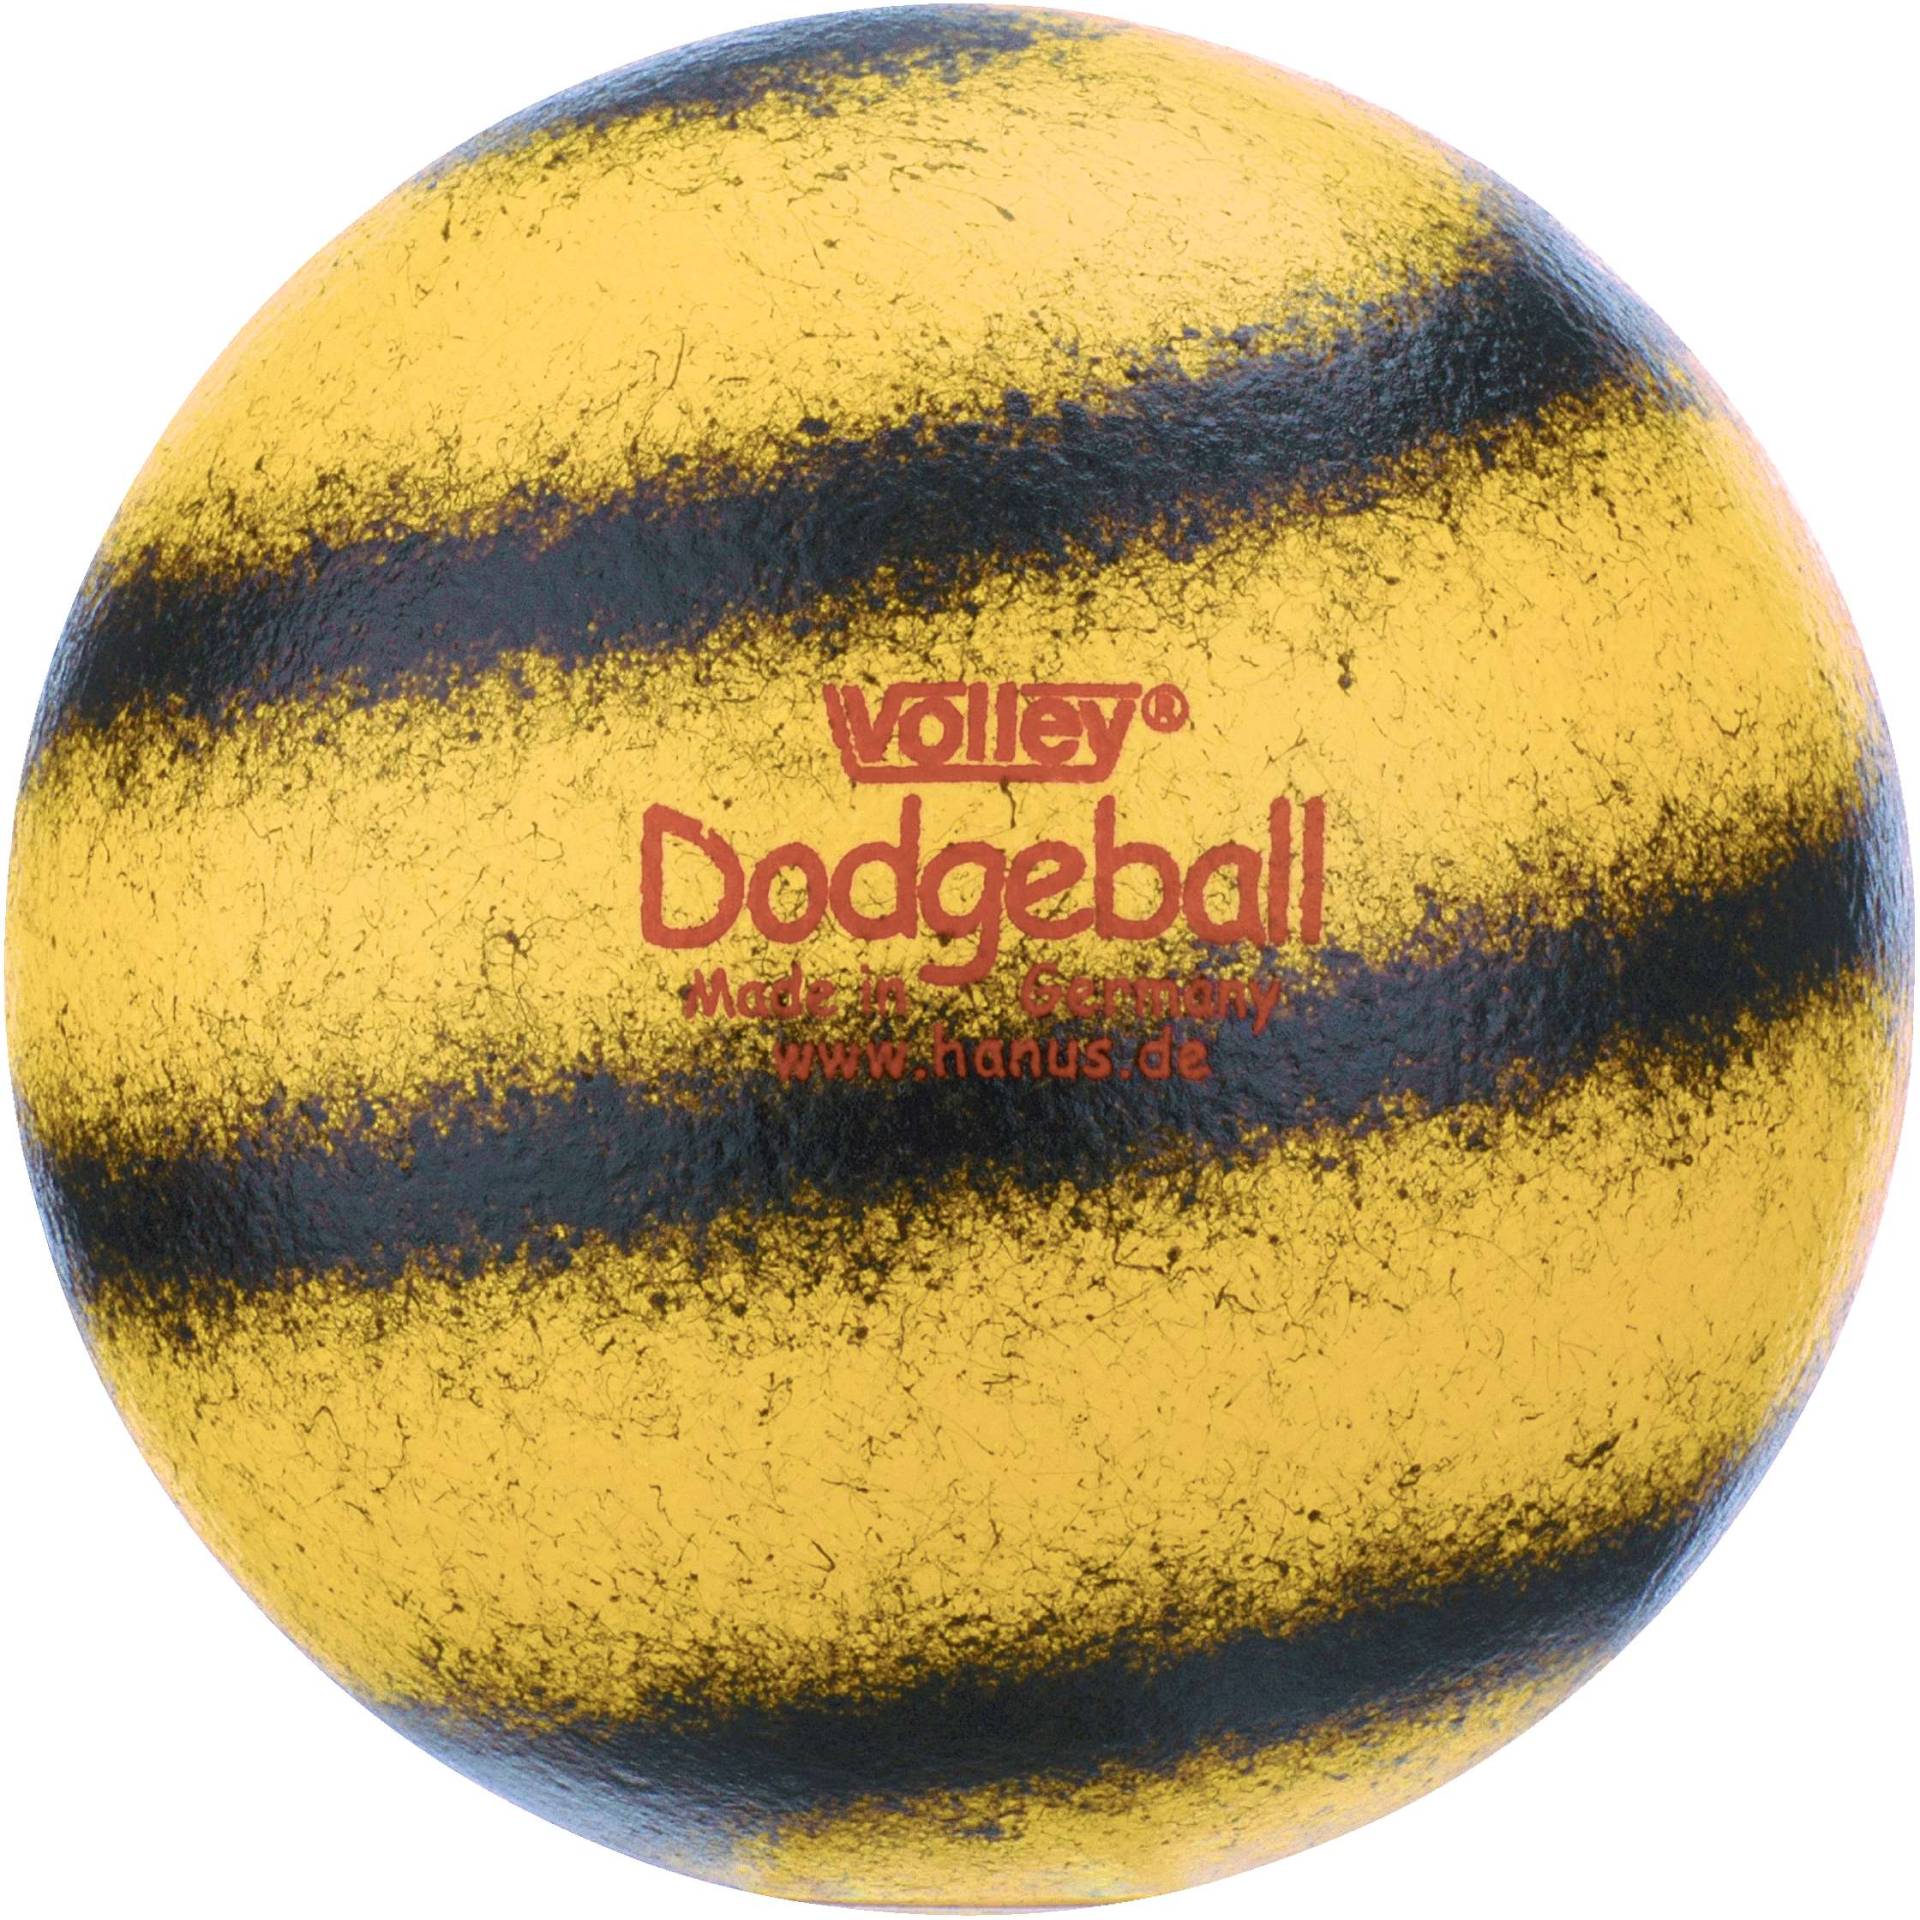 Volley Weichschaumball "Dodgeball" von Volley